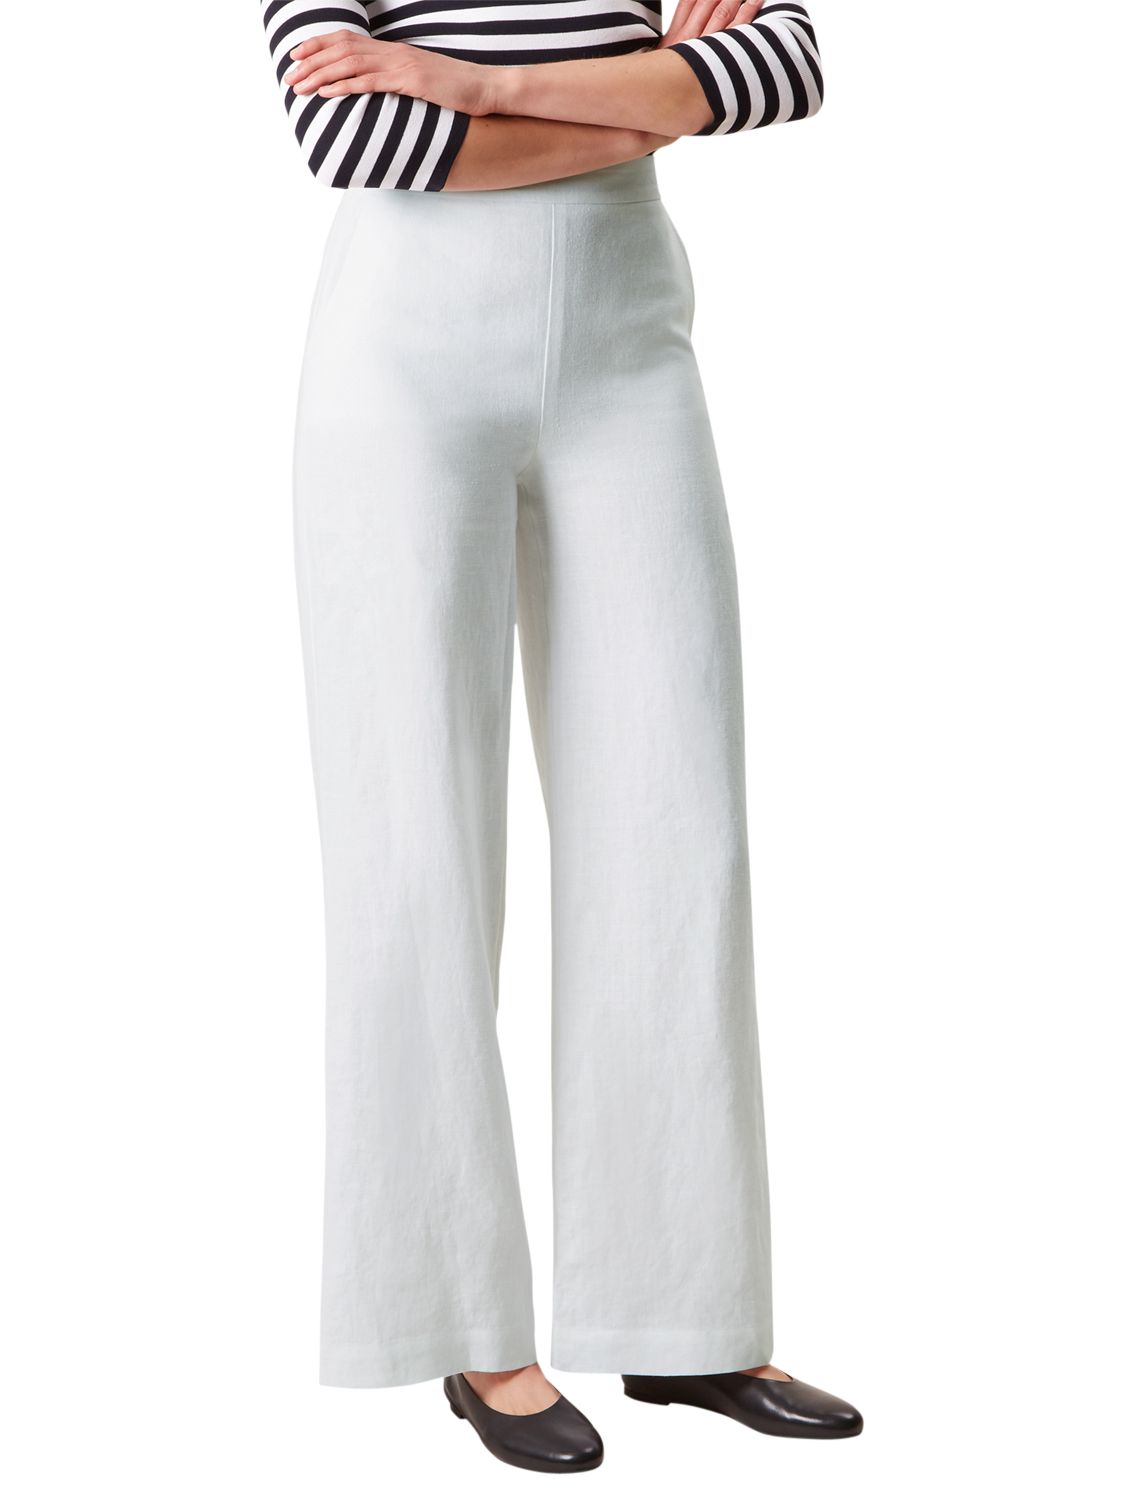 Hobbs Anise Linen Trousers, White, 8